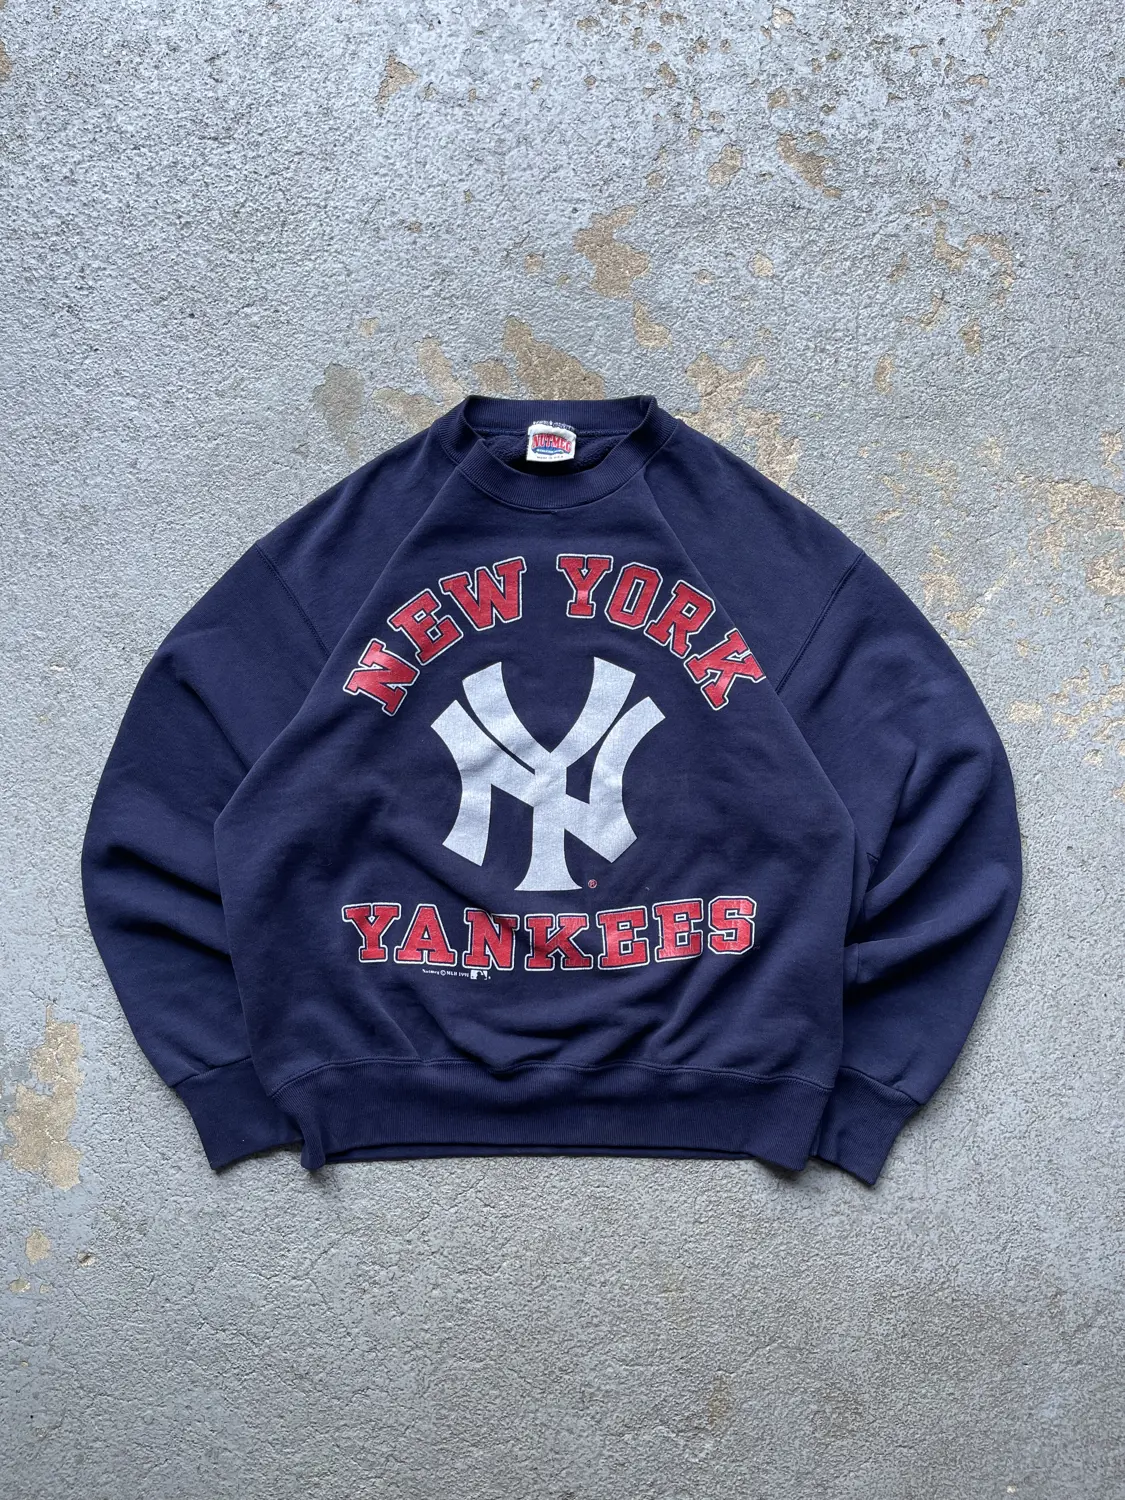 Vintage 1991 Yankees Crewneck